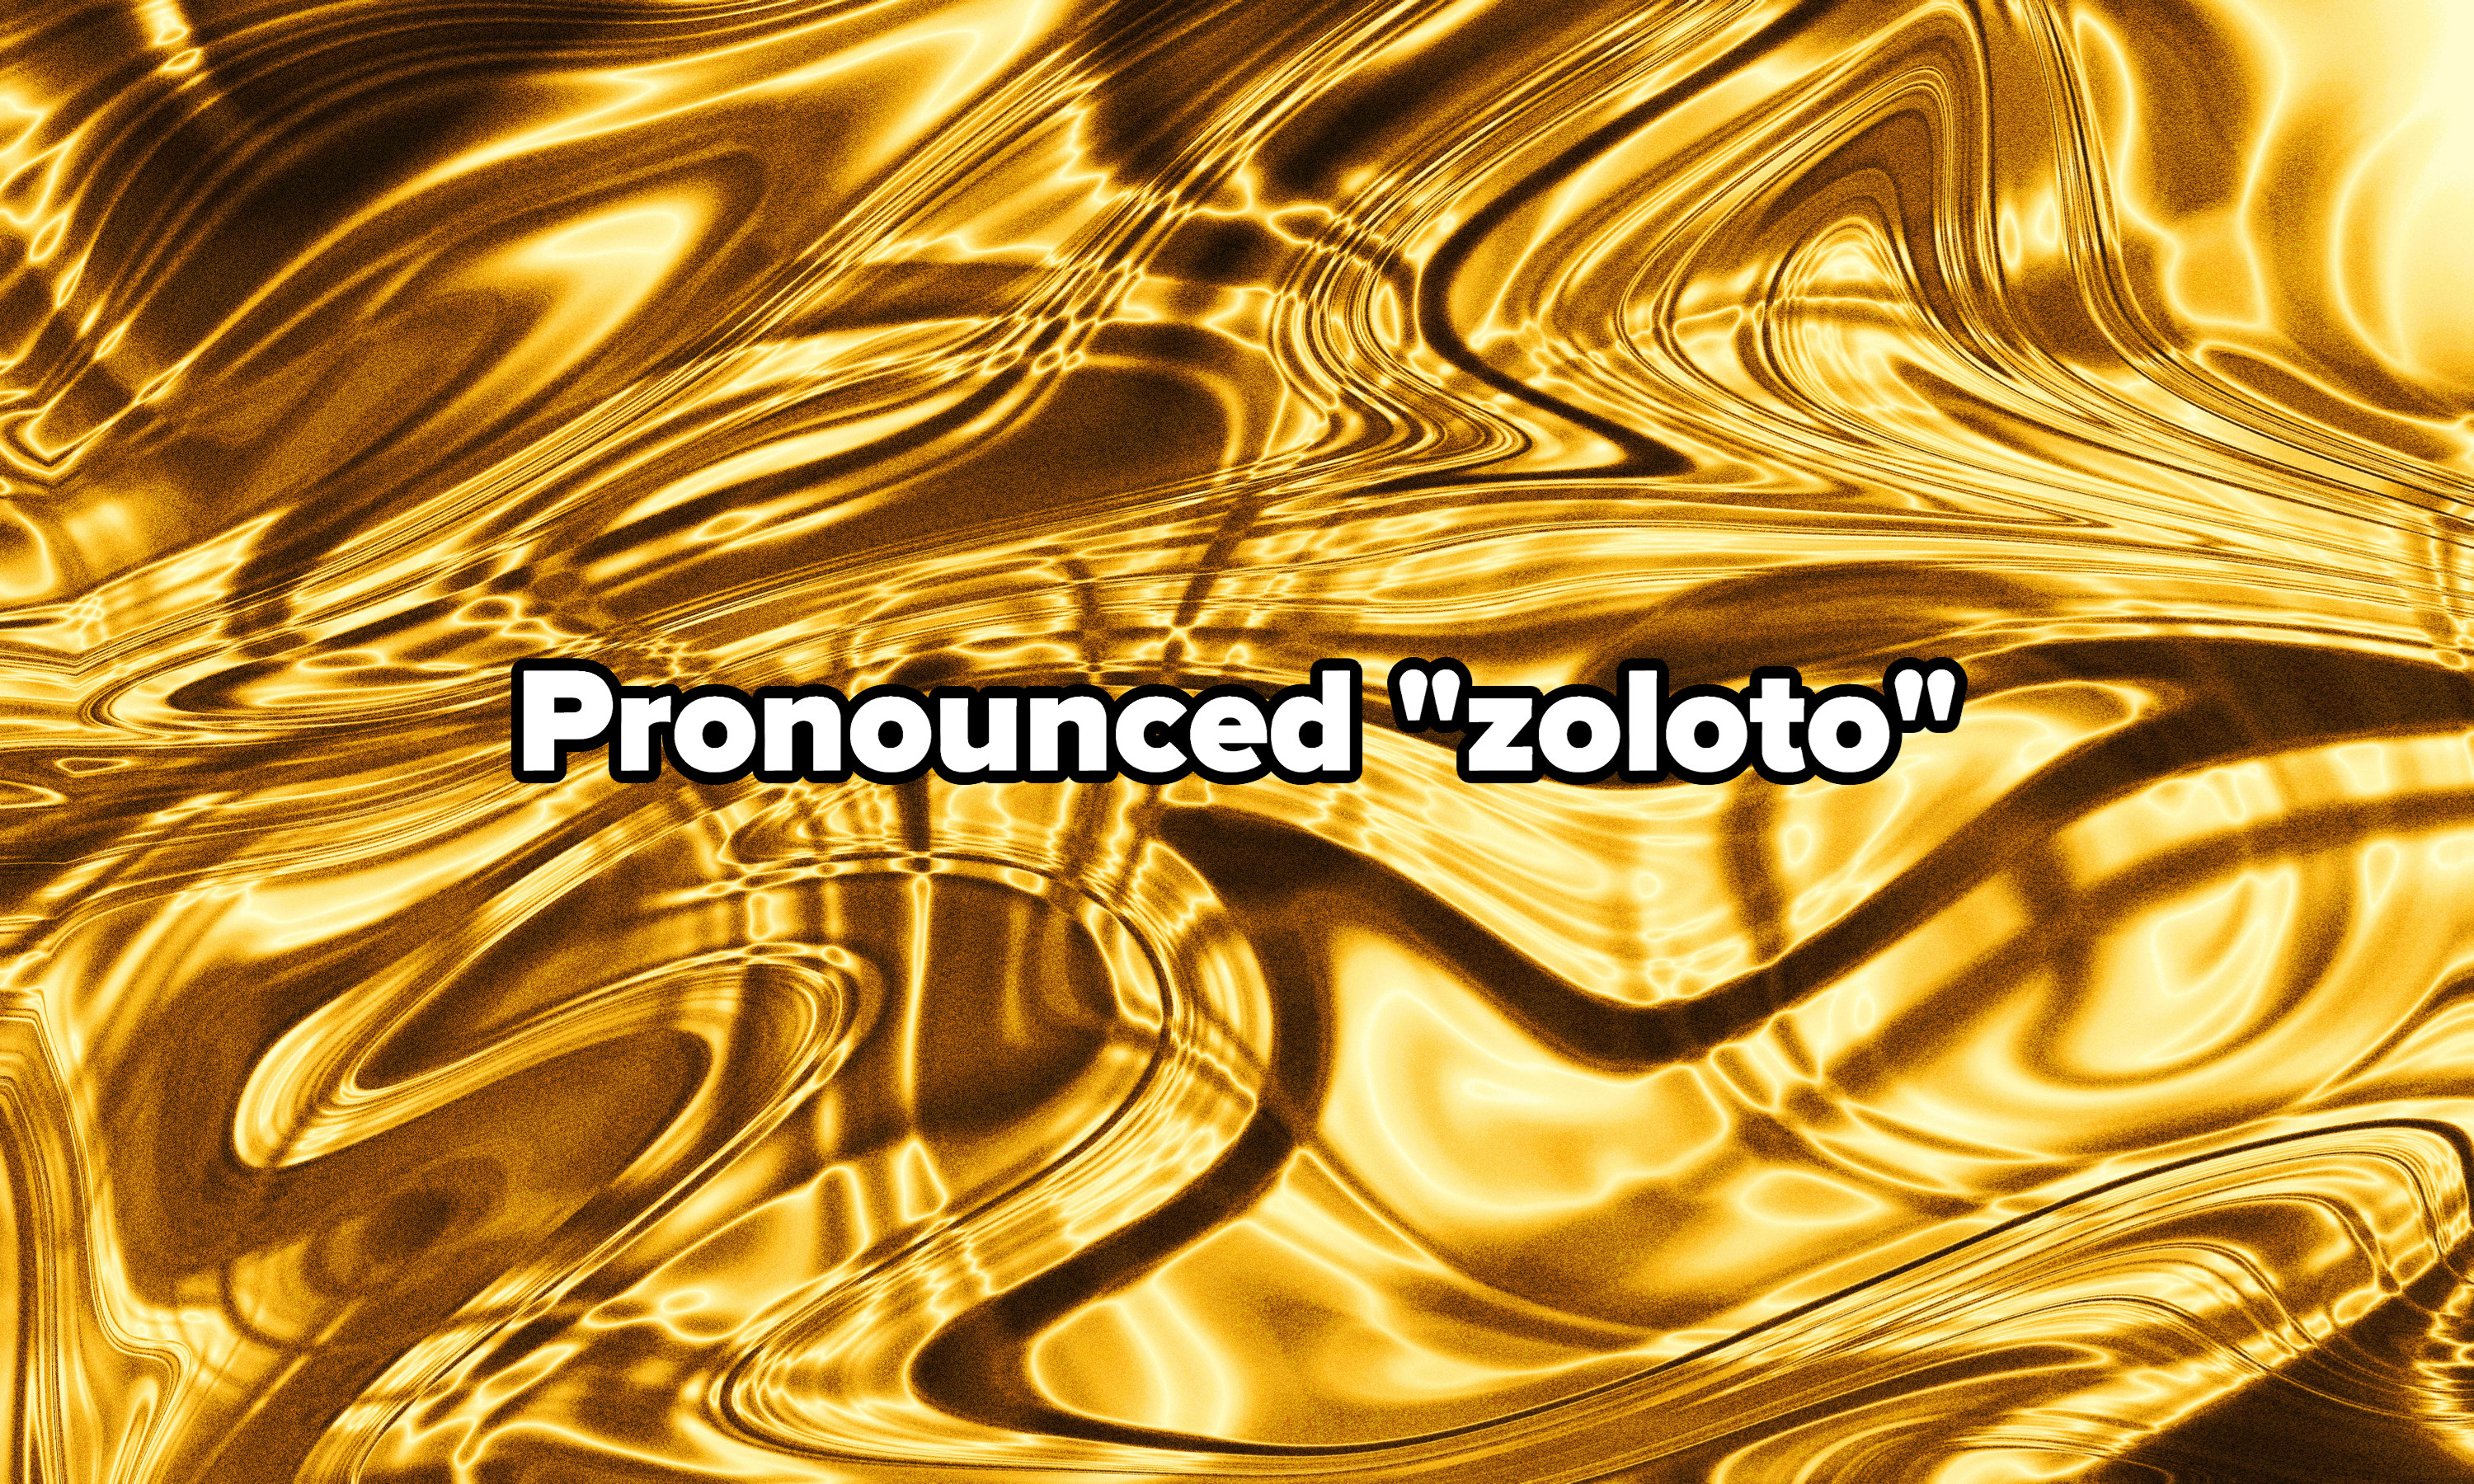 Pronounced zoloto